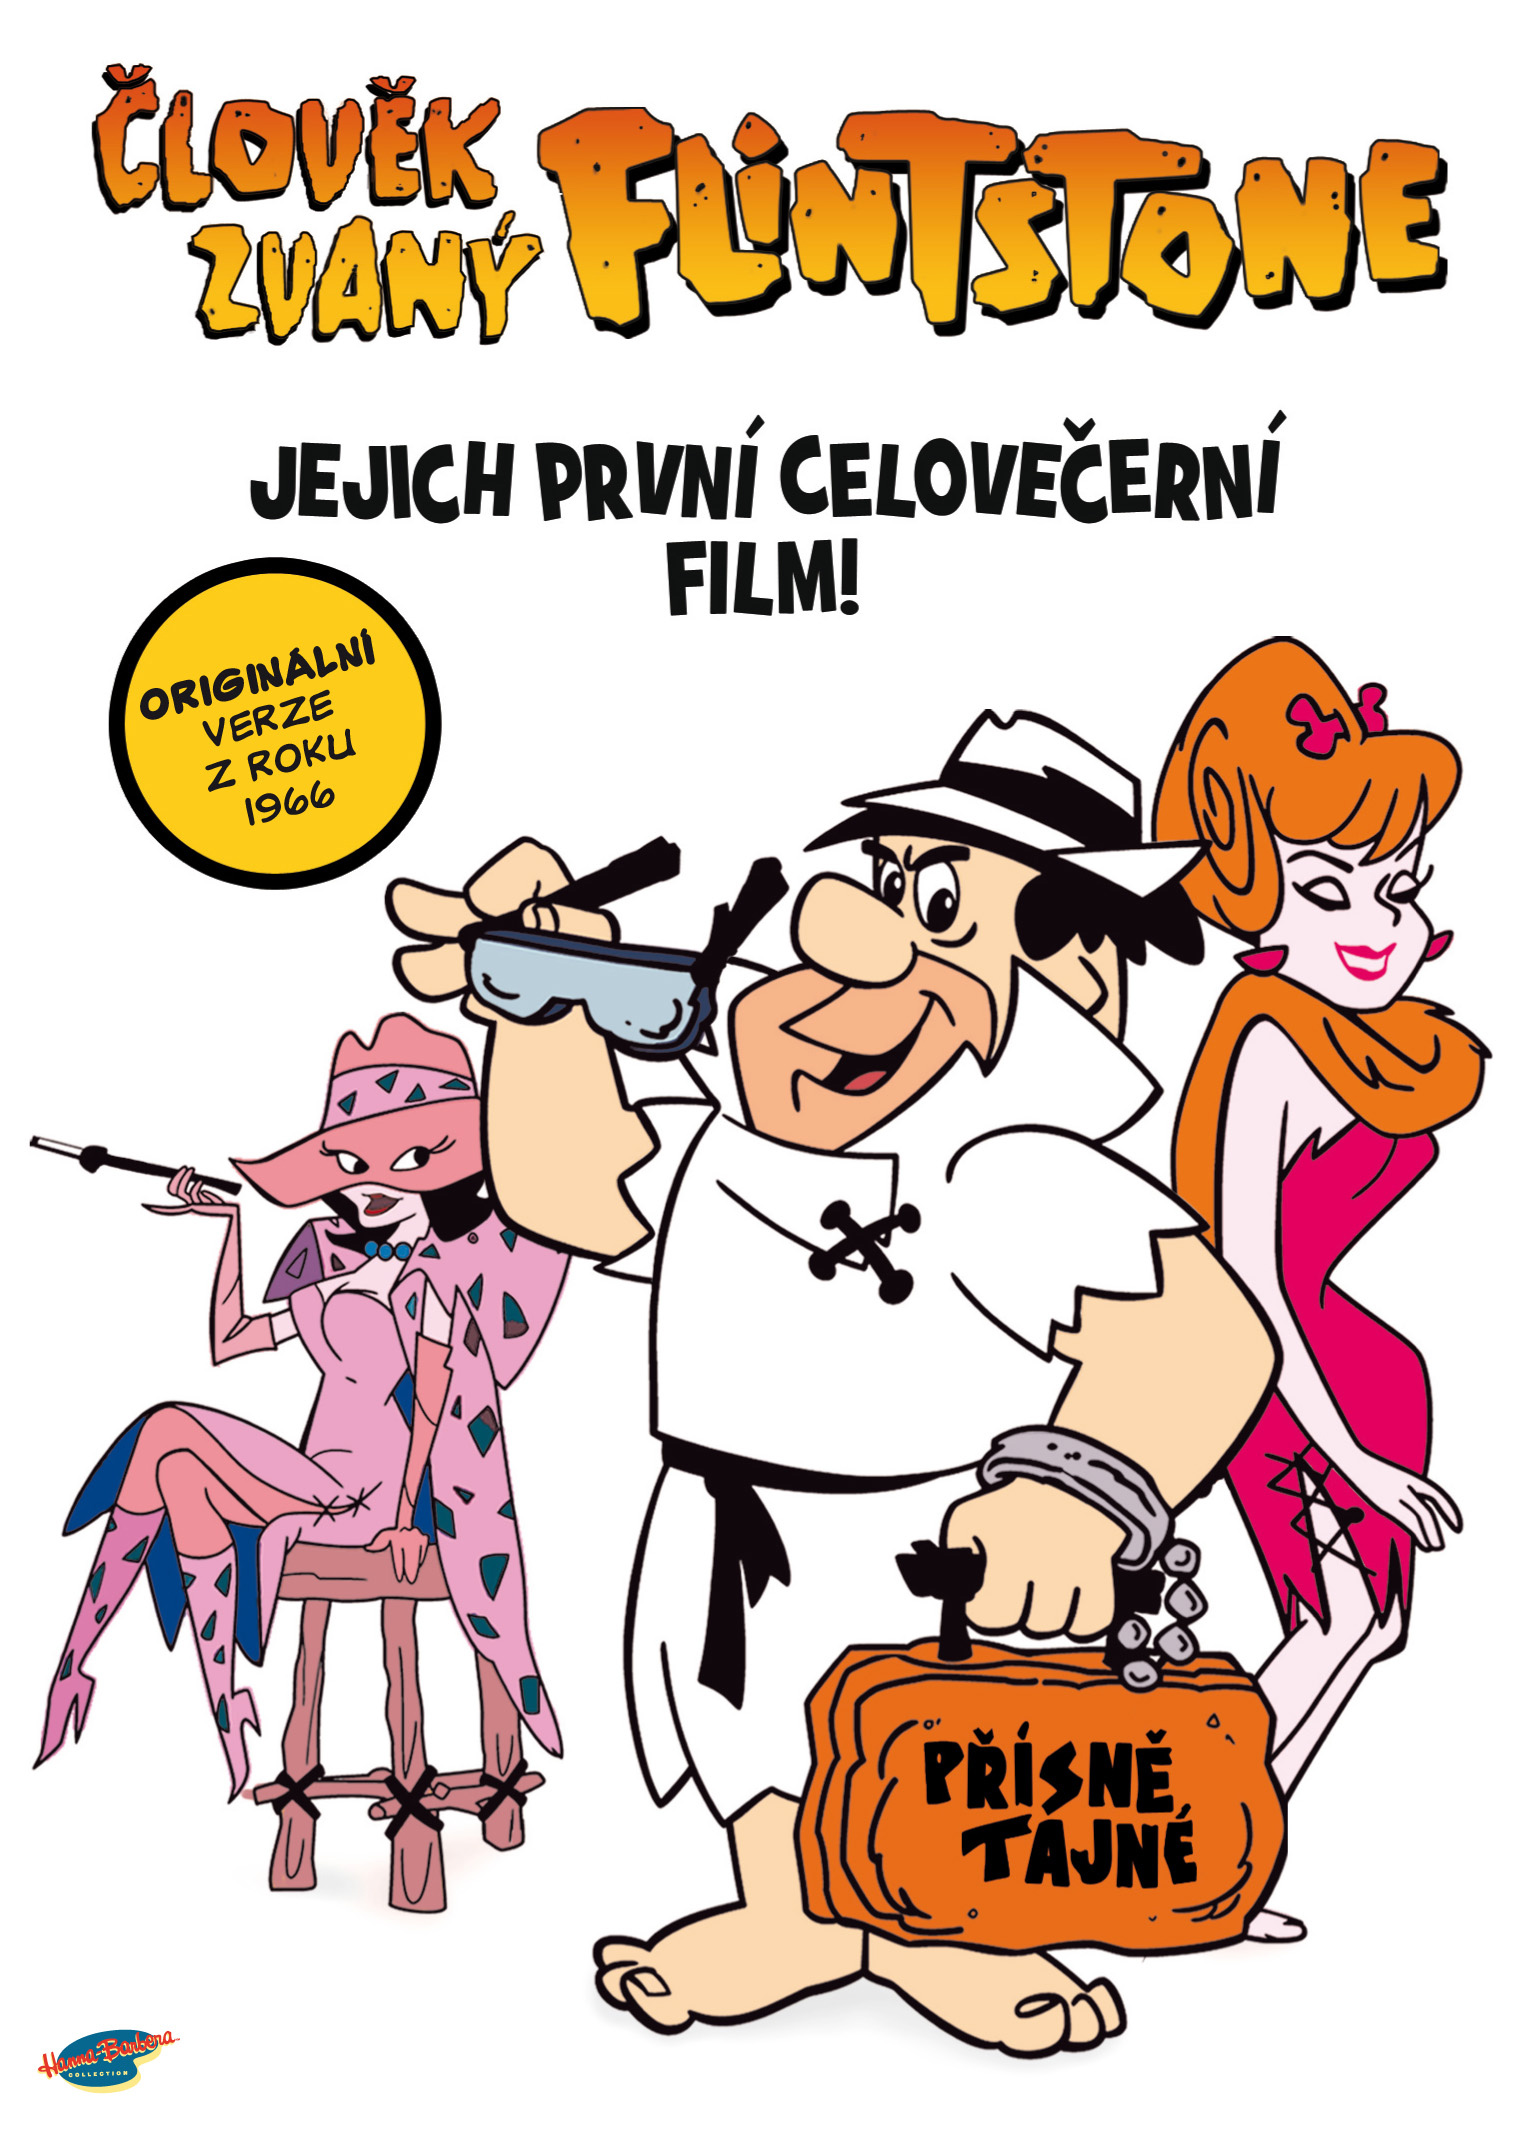 Film Člověk zvaný Flintstone ke stažení - Film Člověk zvaný Flintstone download